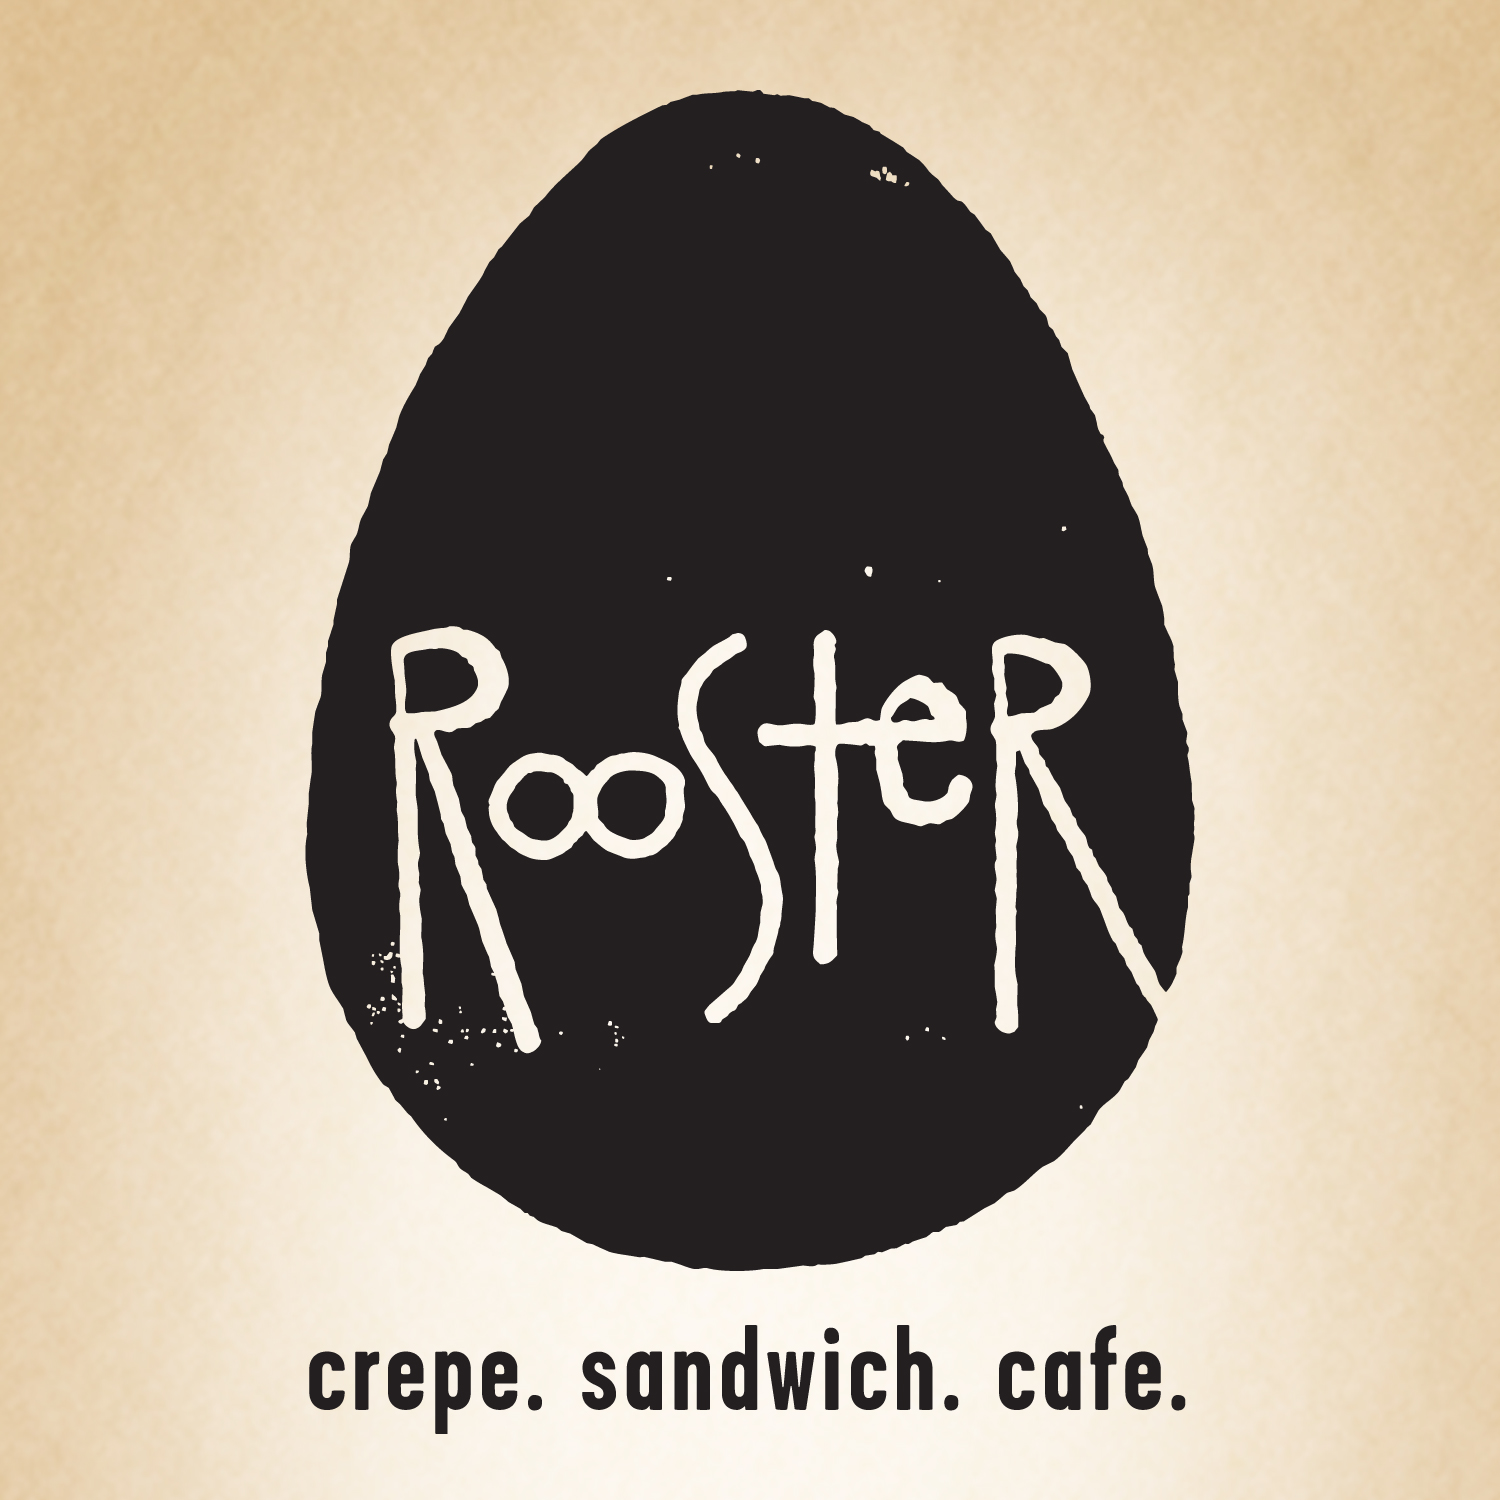 Rooster | cafe. crepe. sandwich | Best Breakfast, Brunch, Mimosa 